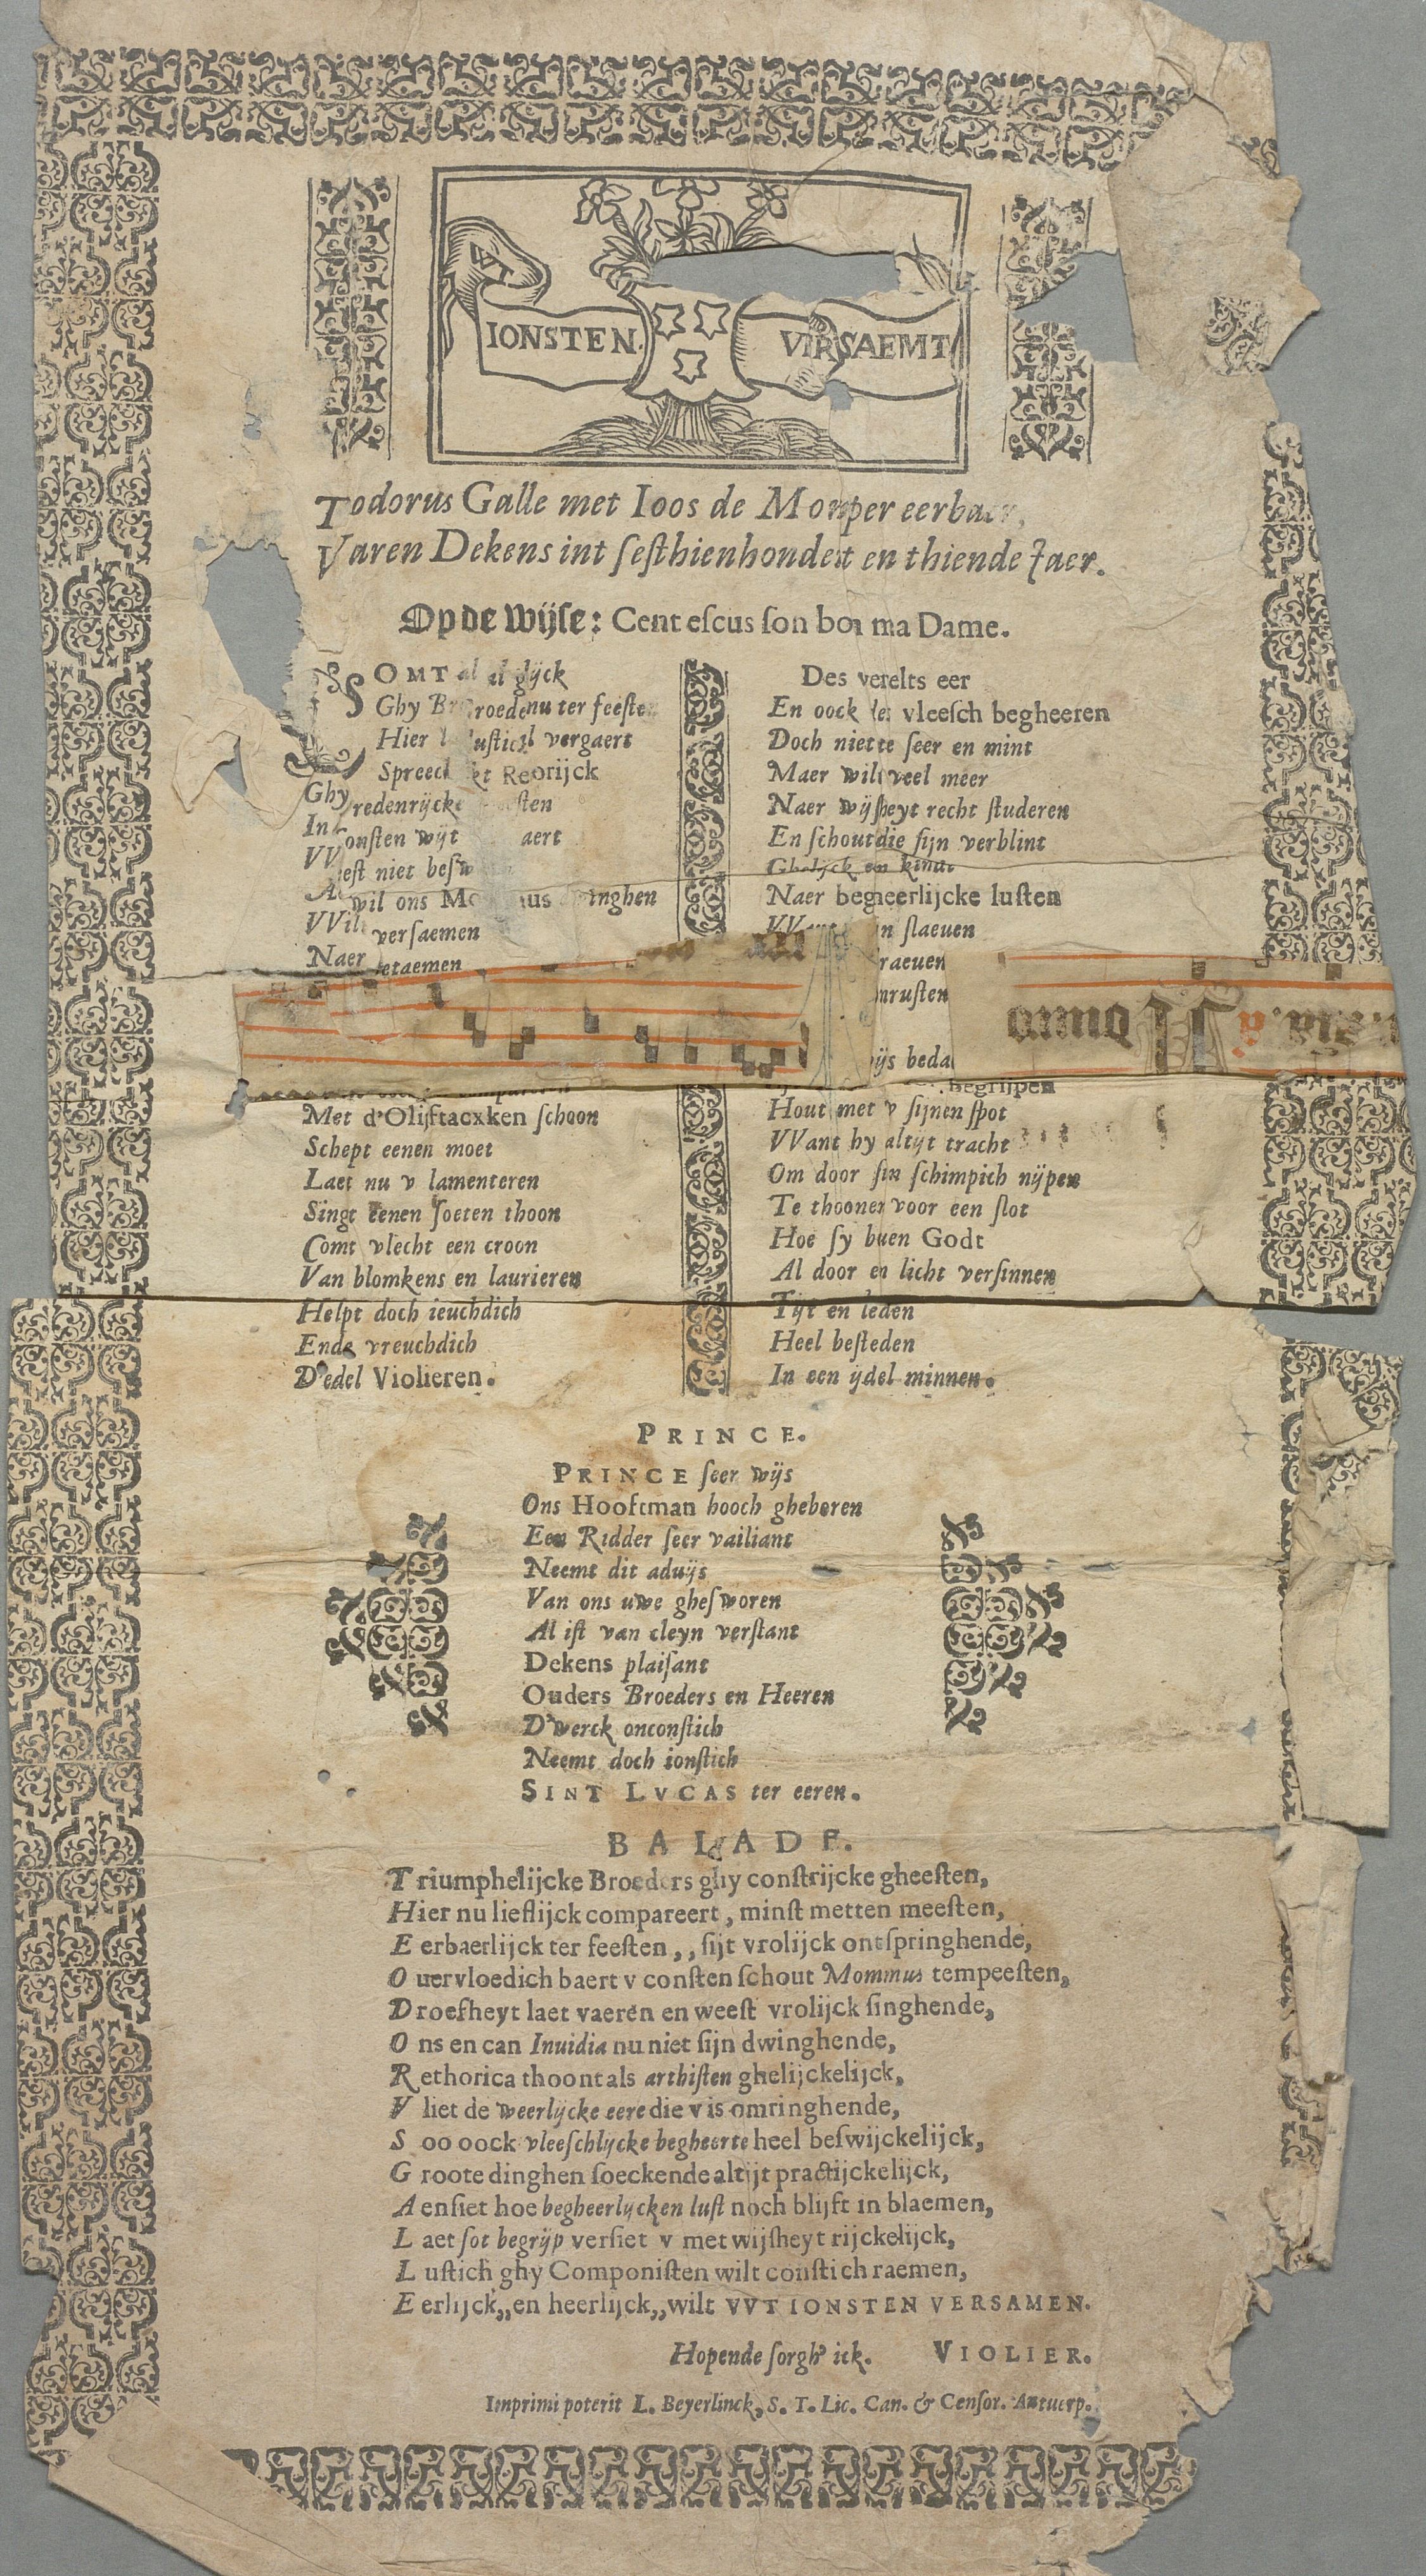 Färgfoto av ett mycket slitet och trasigt tryckt ark med flamländsk text i flera spalter. Trärs över bladet syns remsor med påklistrade handskrivna noter.